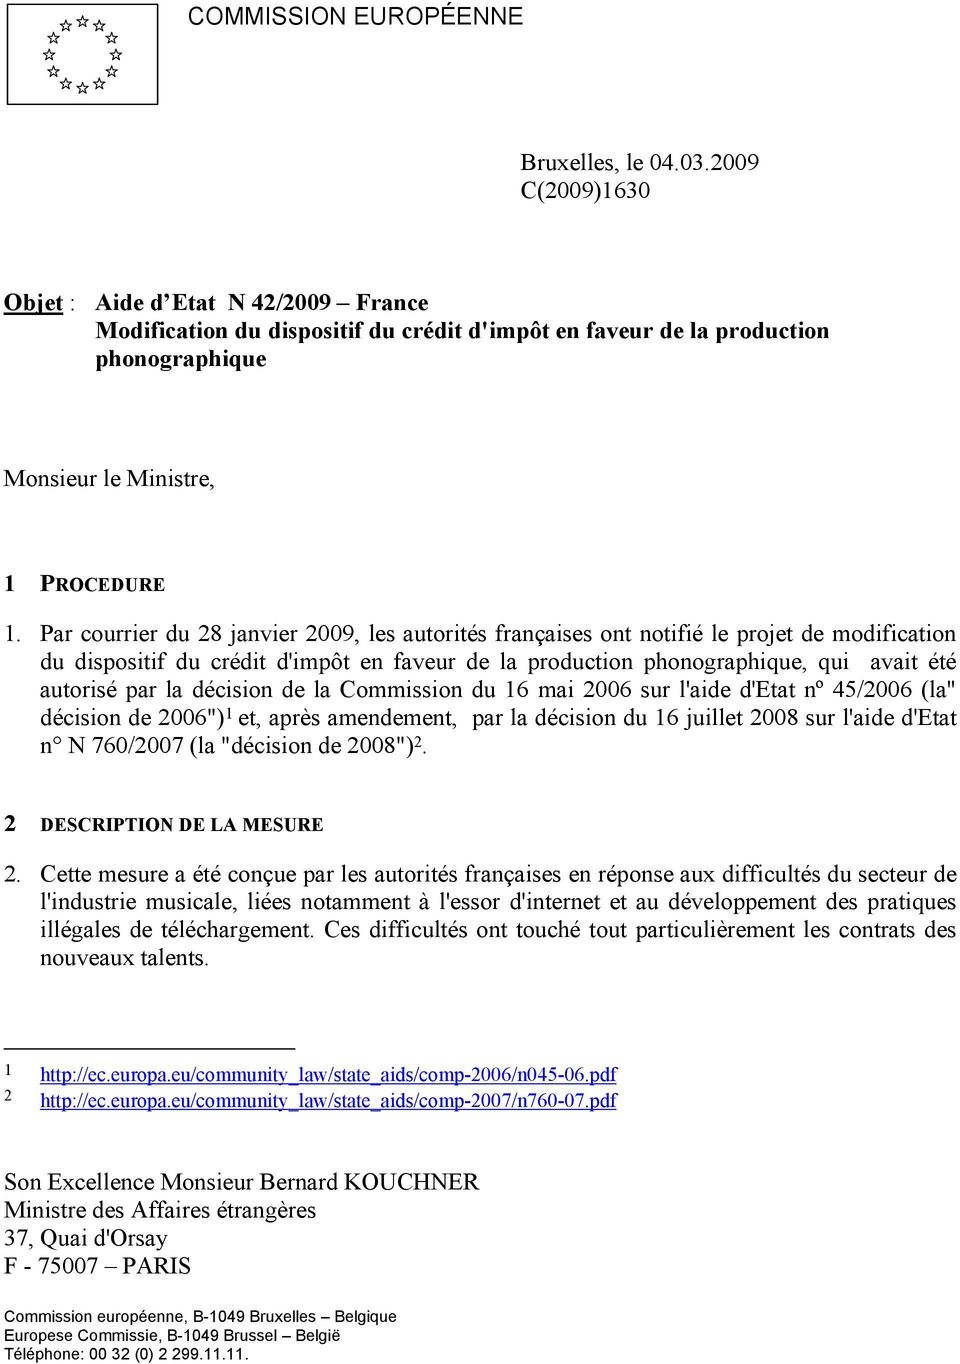 Par courrier du 28 janvier 2009, les autorités françaises ont notifié le projet de modification du dispositif du crédit d'impôt en faveur de la production phonographique, qui avait été autorisé par